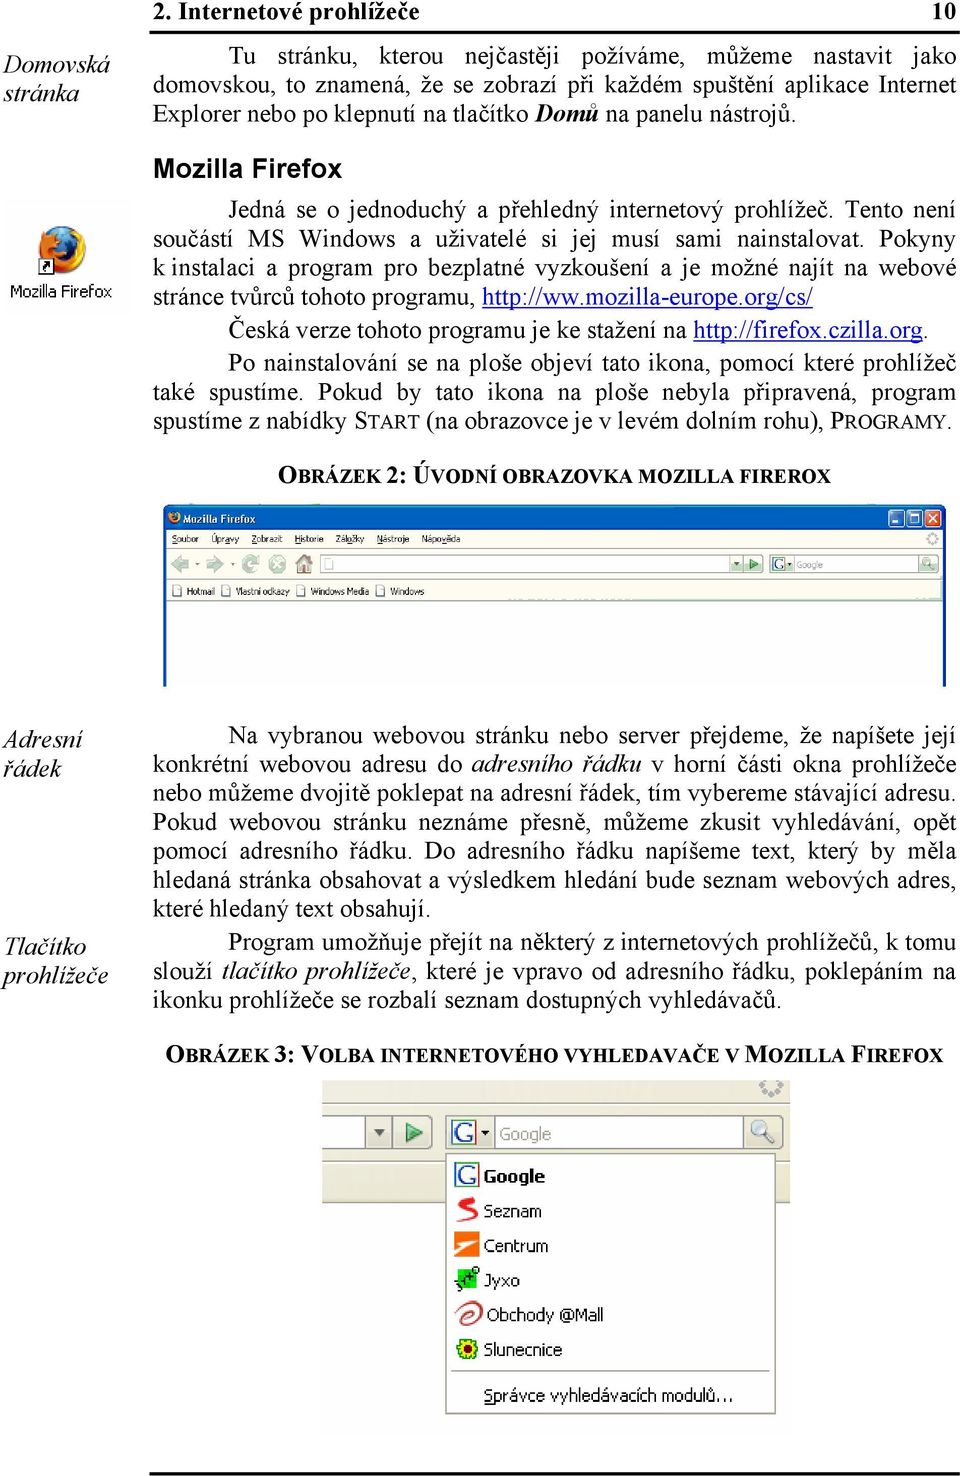 Domů na panelu nástrojů. Mozilla Firefox Jedná se o jednoduchý a přehledný internetový prohlížeč. Tento není součástí MS Windows a uživatelé si jej musí sami nainstalovat.